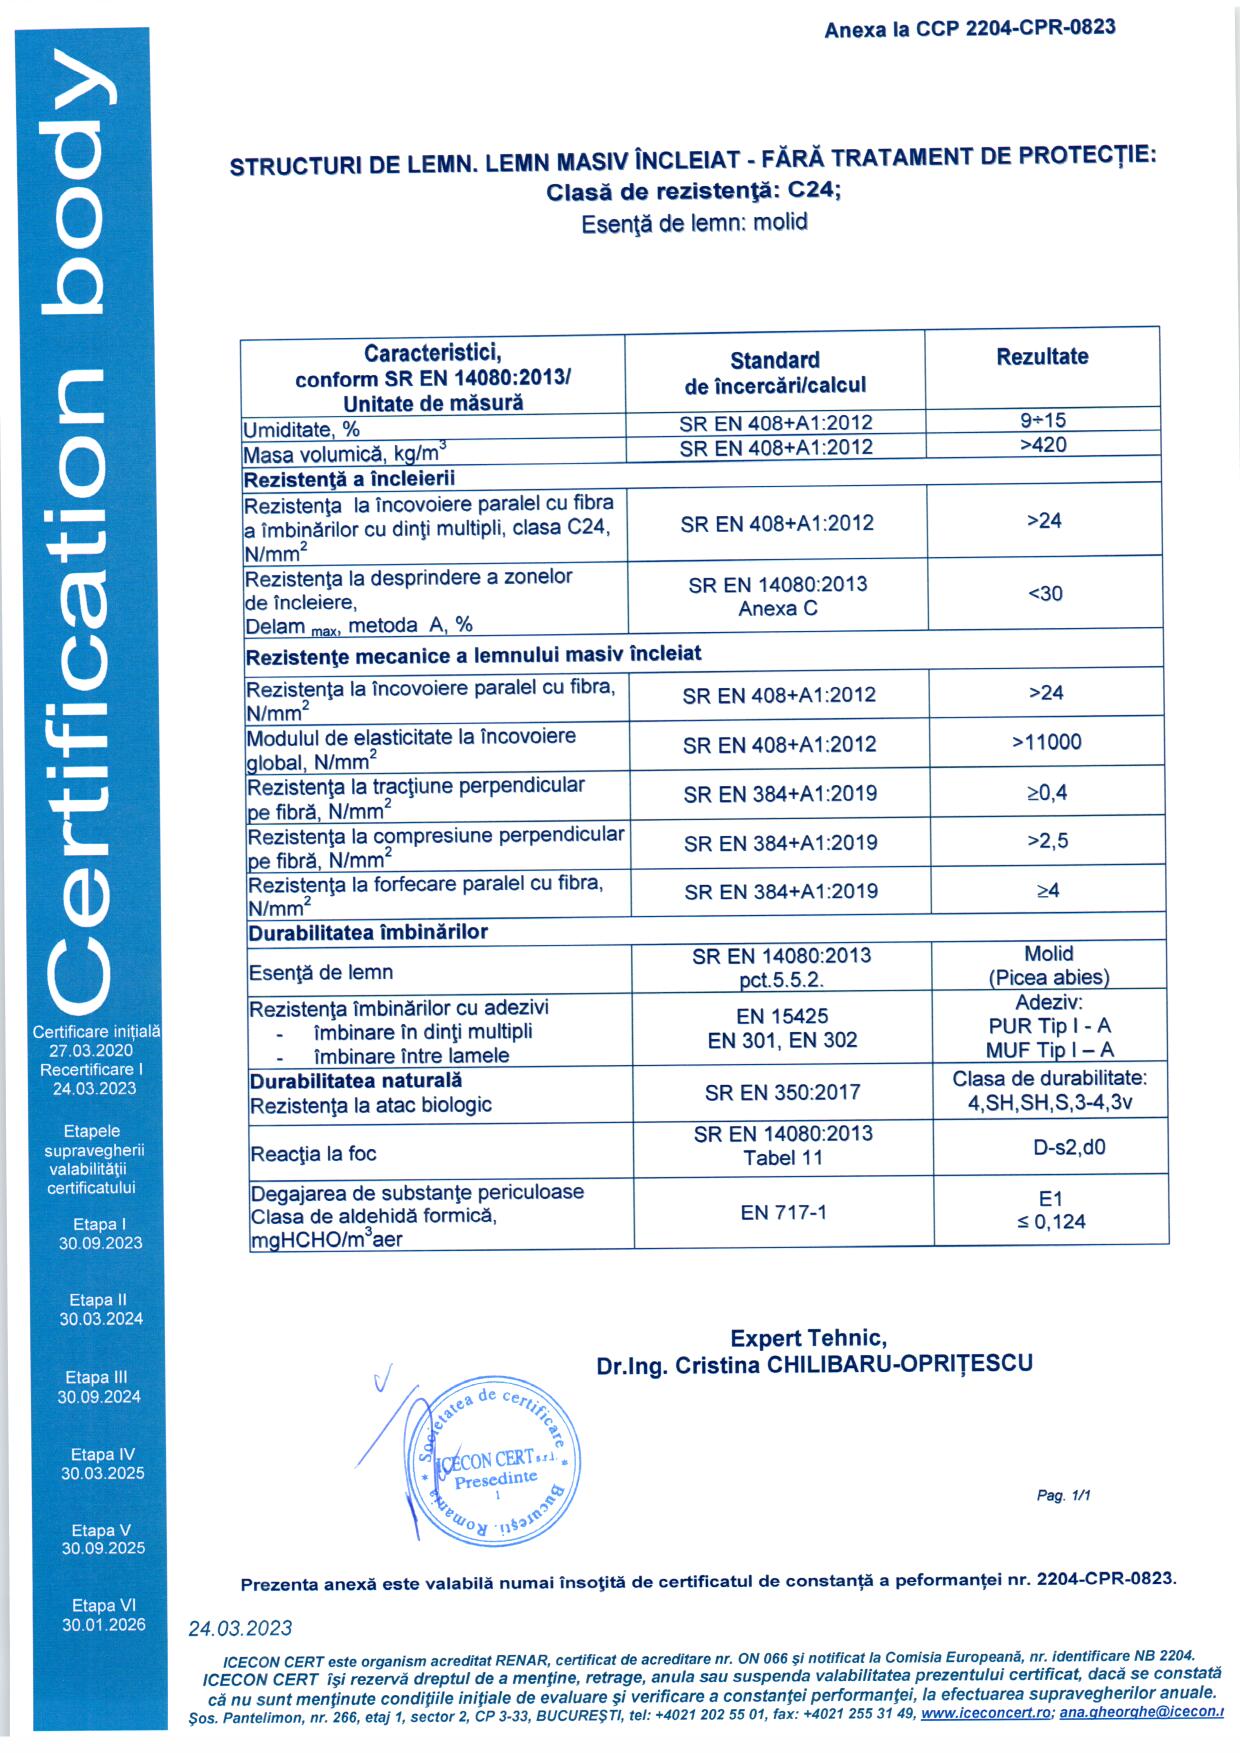 GLULAM Certificat constanta performanta 2023 - Lemn masiv incleiat C24 2